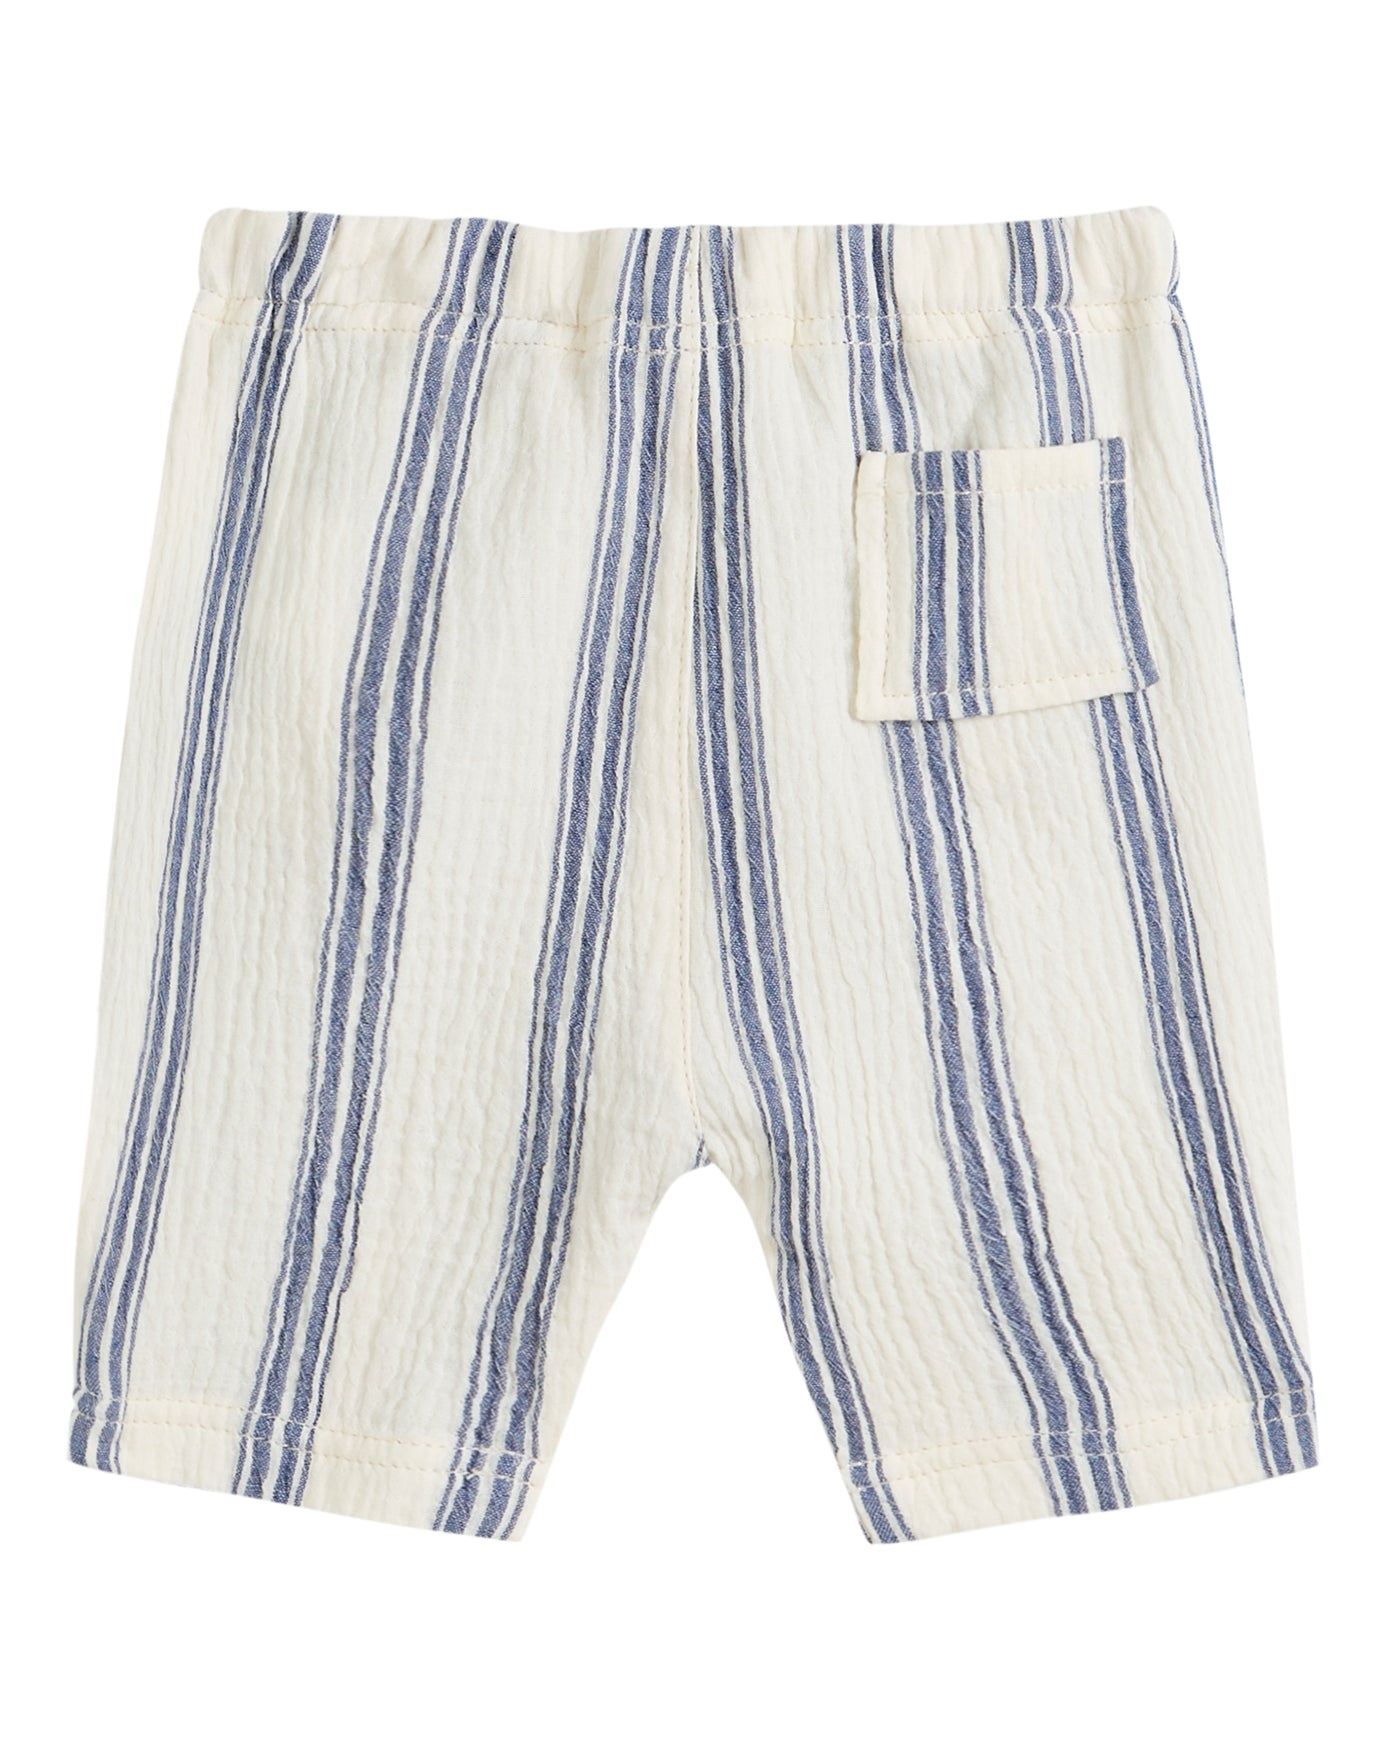 Blue Striped Cotton Harem Pants